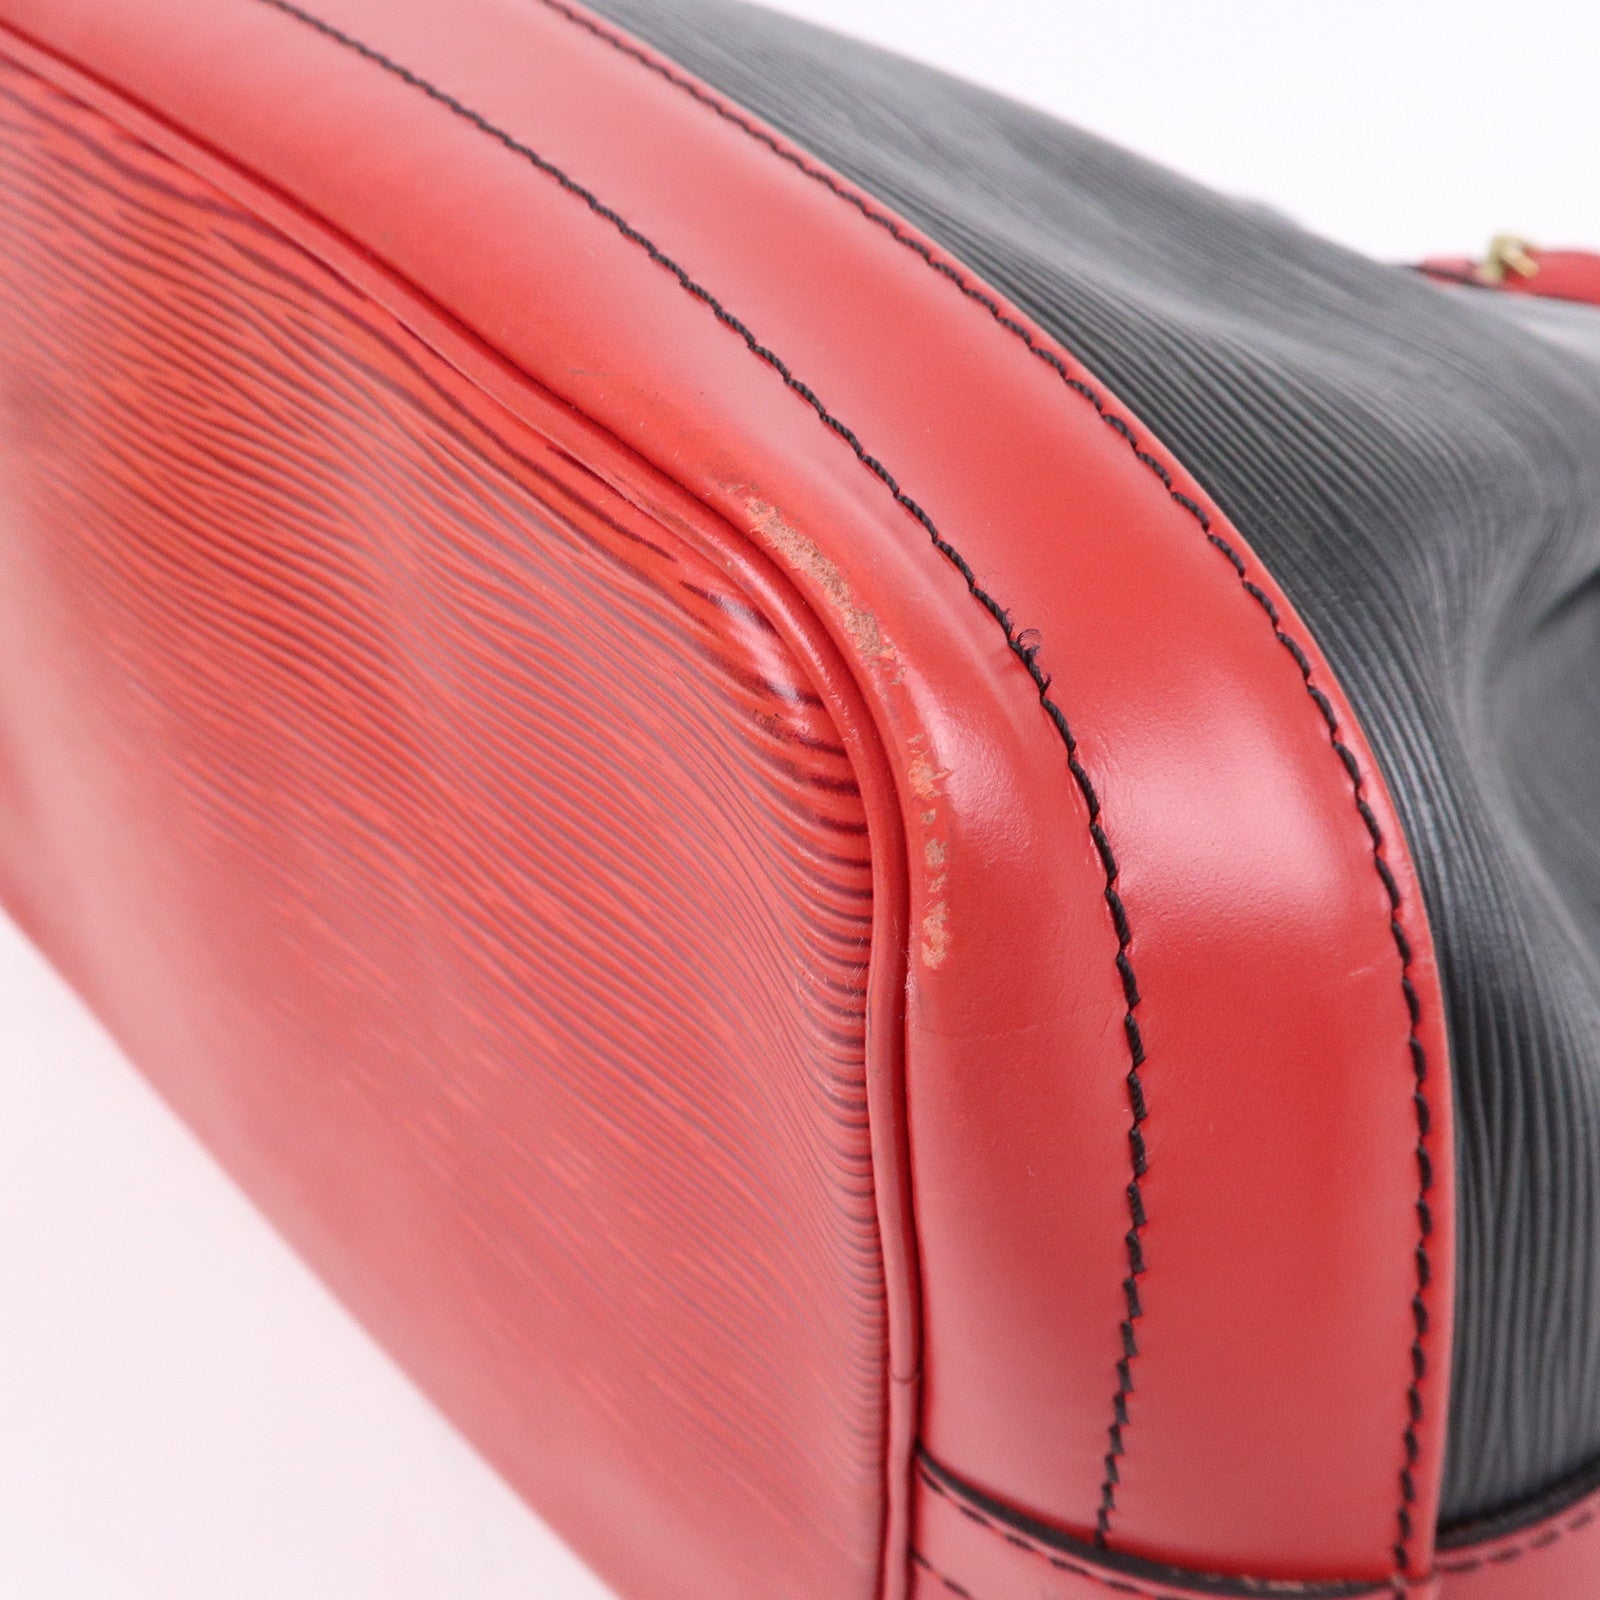 Louis-Vuitton-Epi-Noe-Shoulder-Bag-Noir-Castilian-Red-M44017